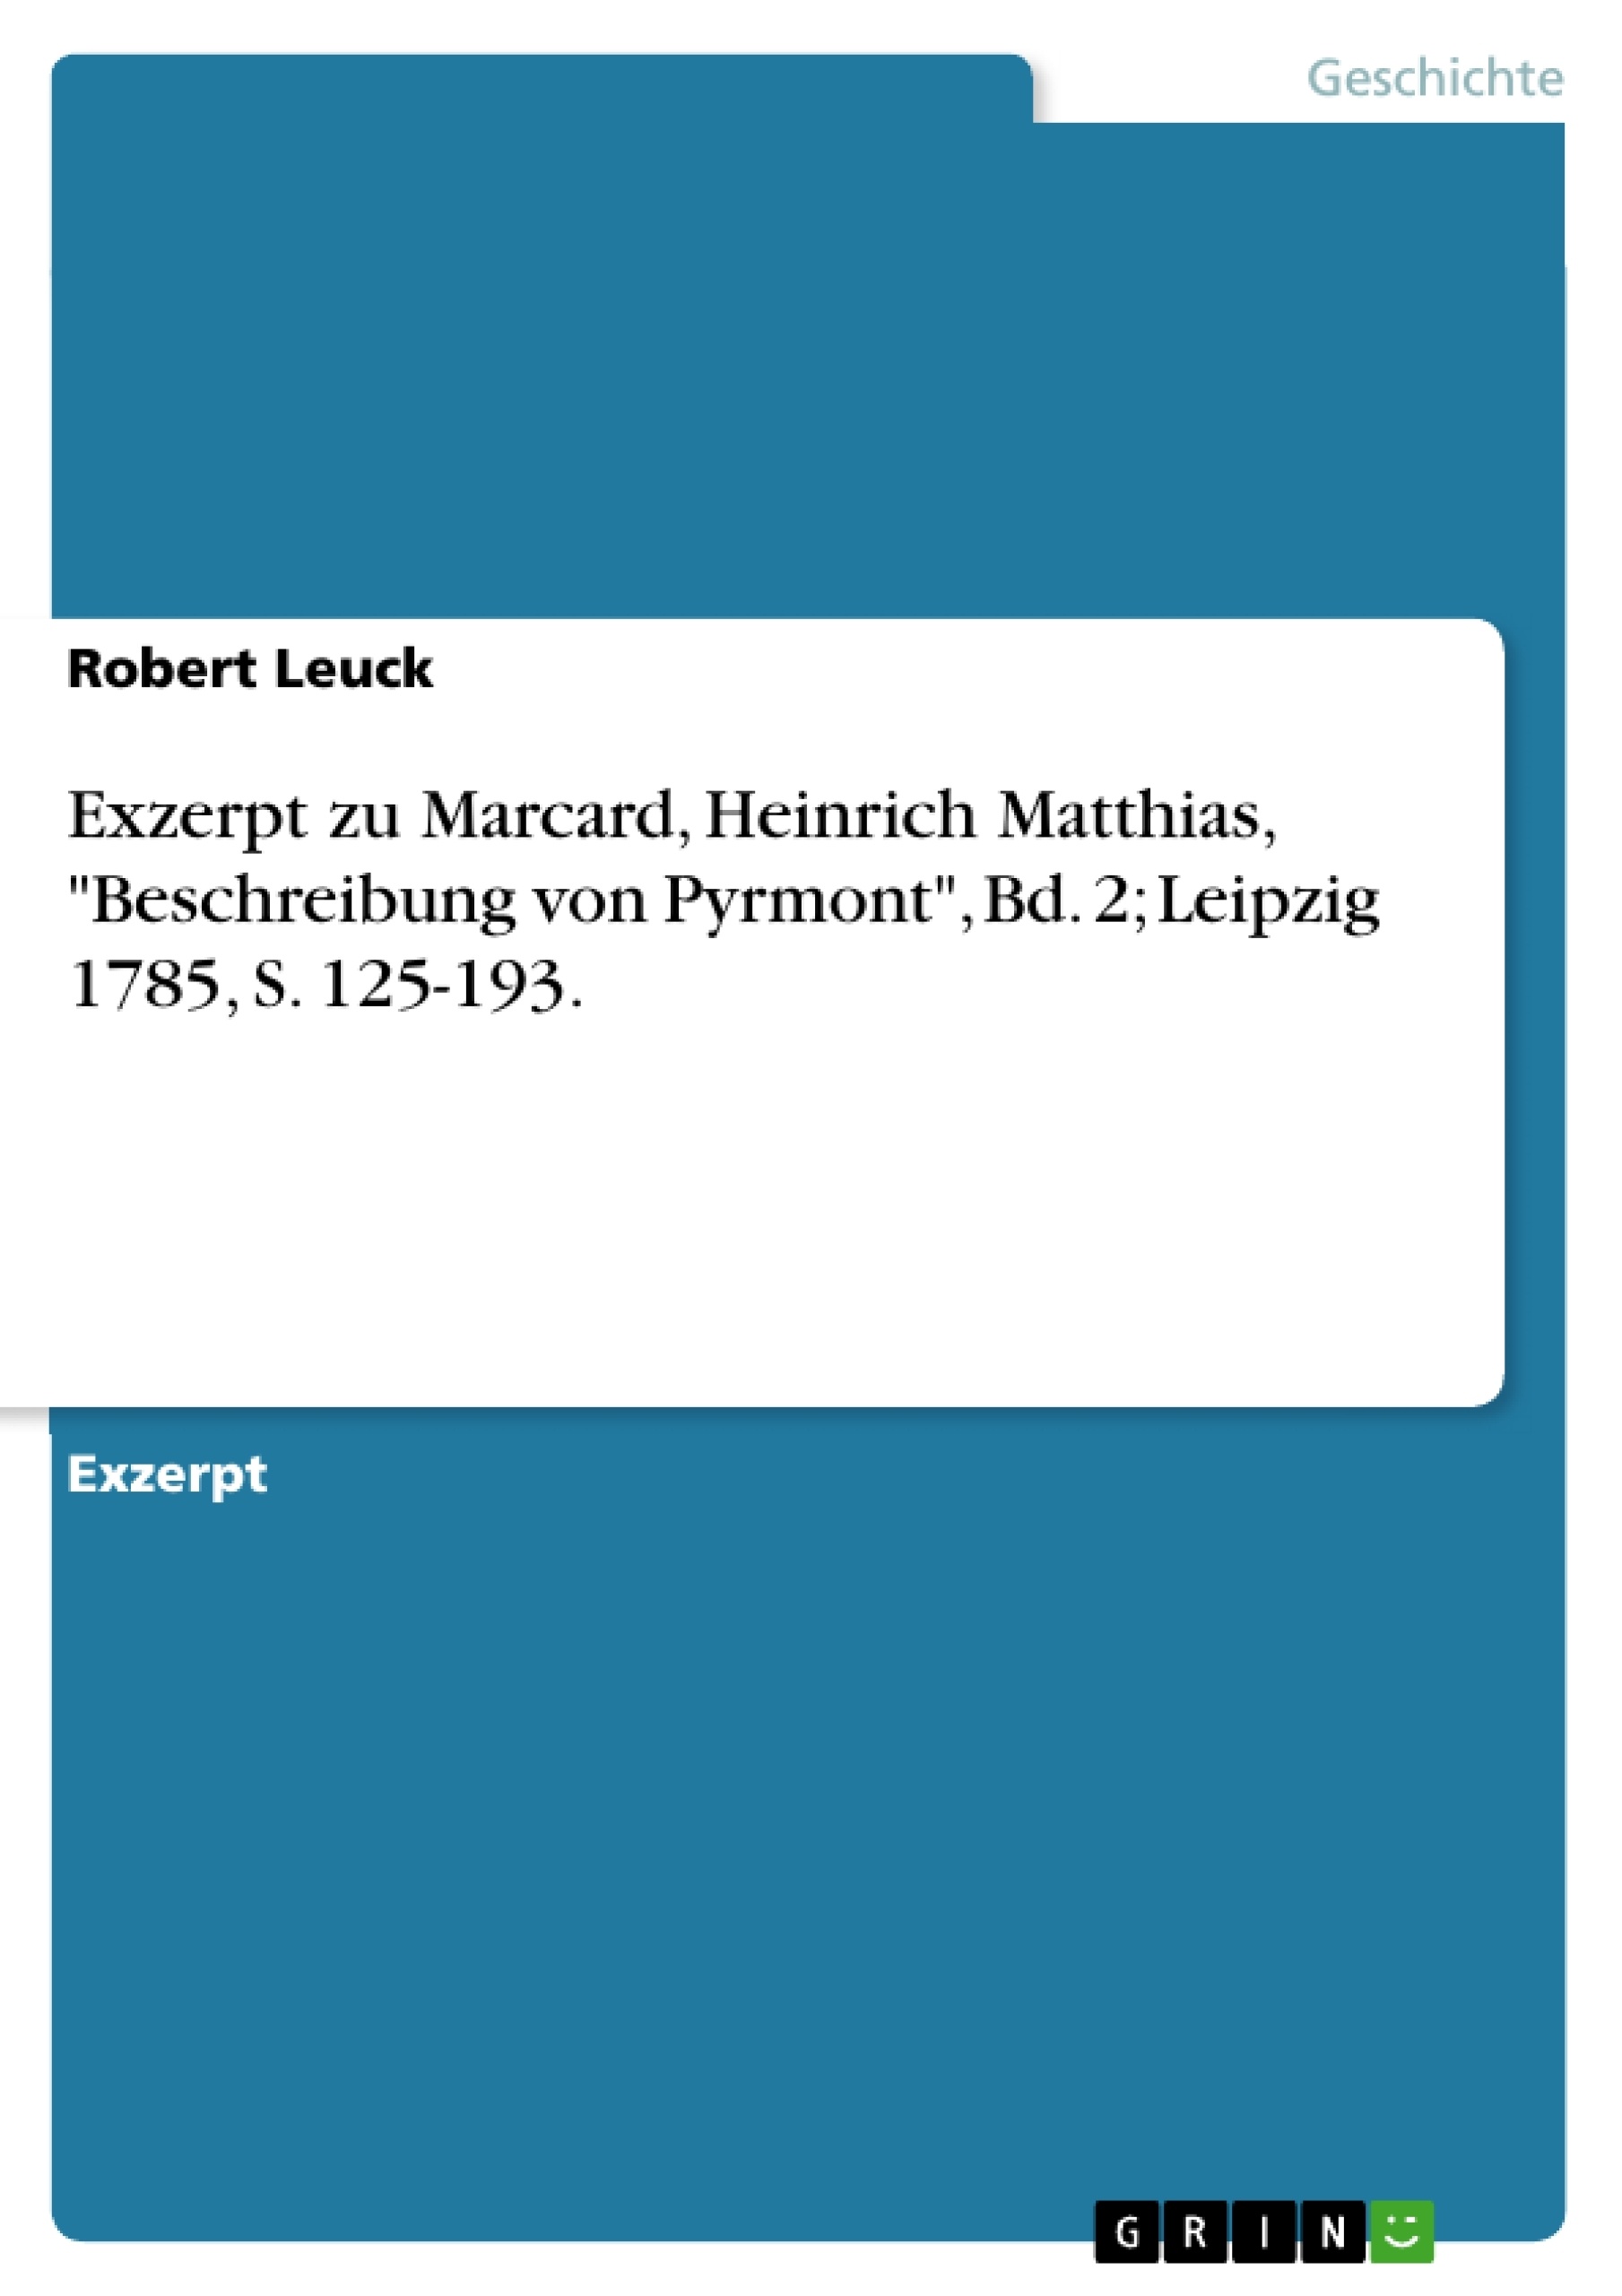 Titre: Exzerpt zu Marcard, Heinrich Matthias, "Beschreibung von Pyrmont", Bd. 2; Leipzig 1785, S. 125-193.